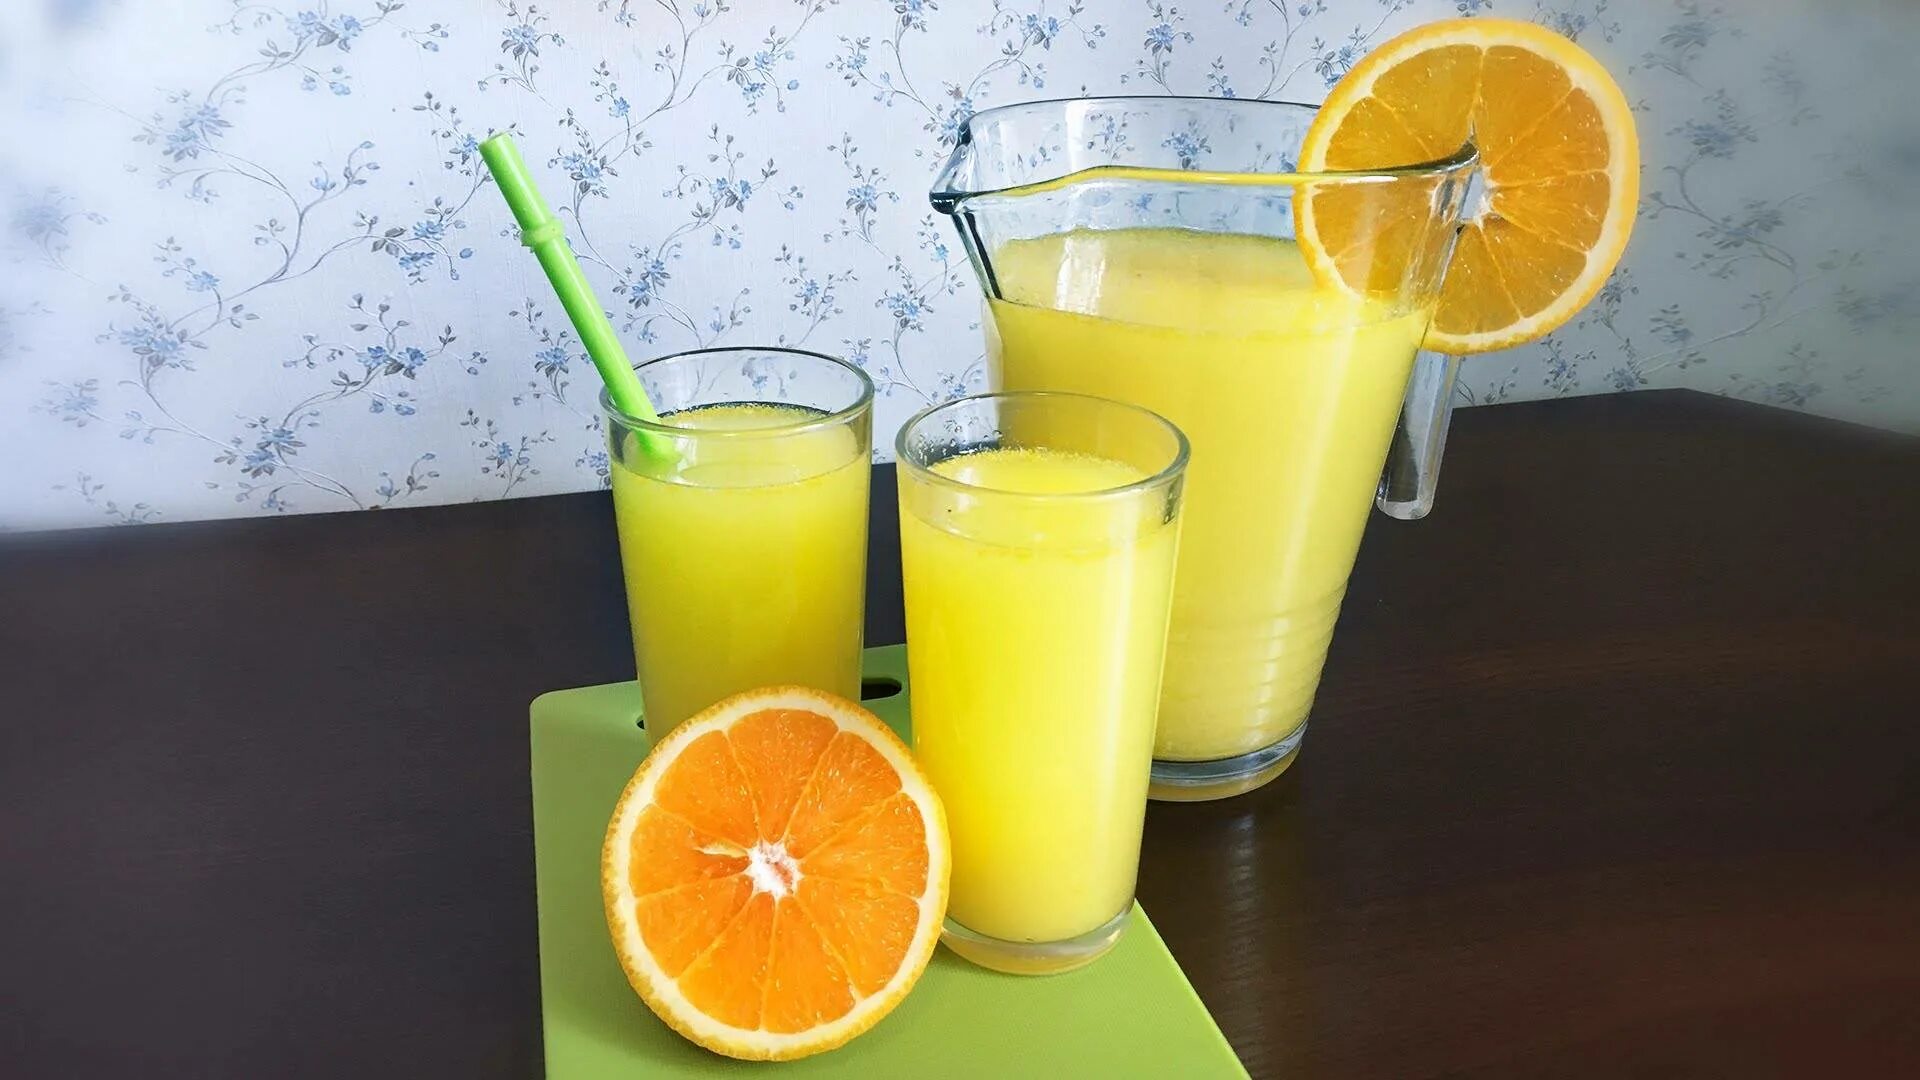 Лимонный сок из лимонов. Лимонад цитрус. Lemonade 1:1. Лимонад домашний апельсин и лимон. Апельсины и апельсиновый сок.